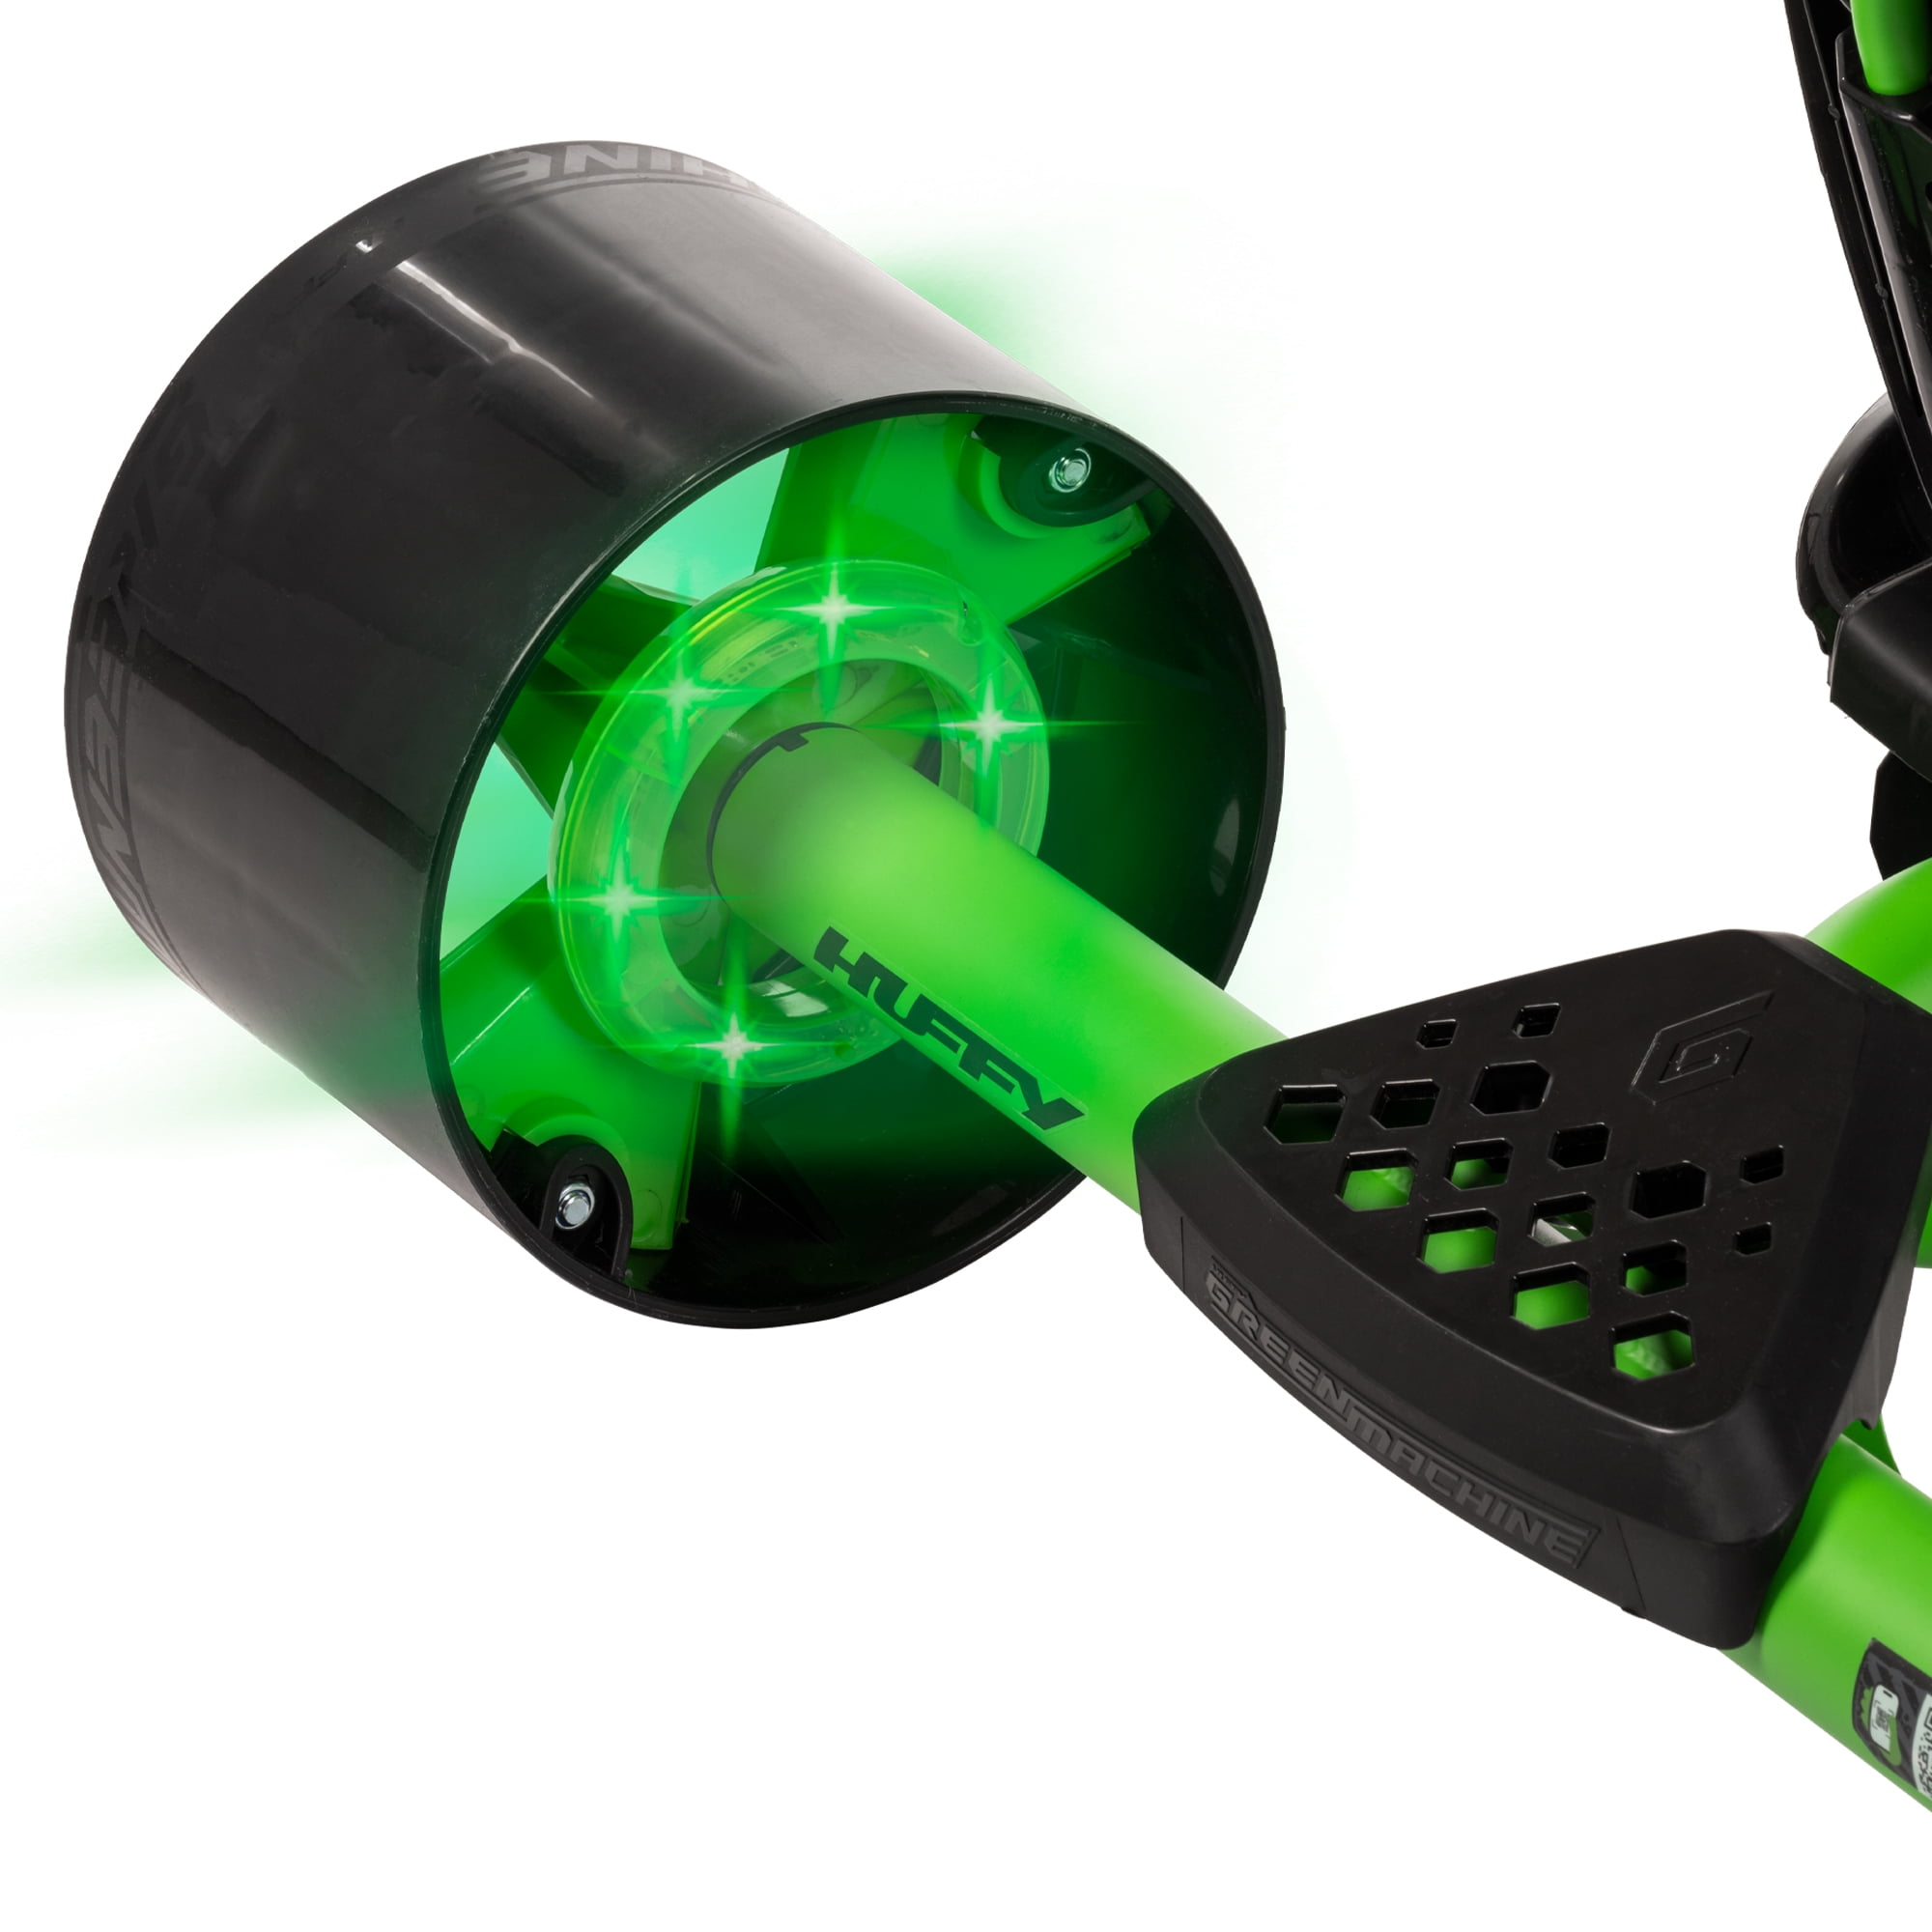 Huffy 20 Green Machine Drift Trikes for Kids, Green/Black : Buy